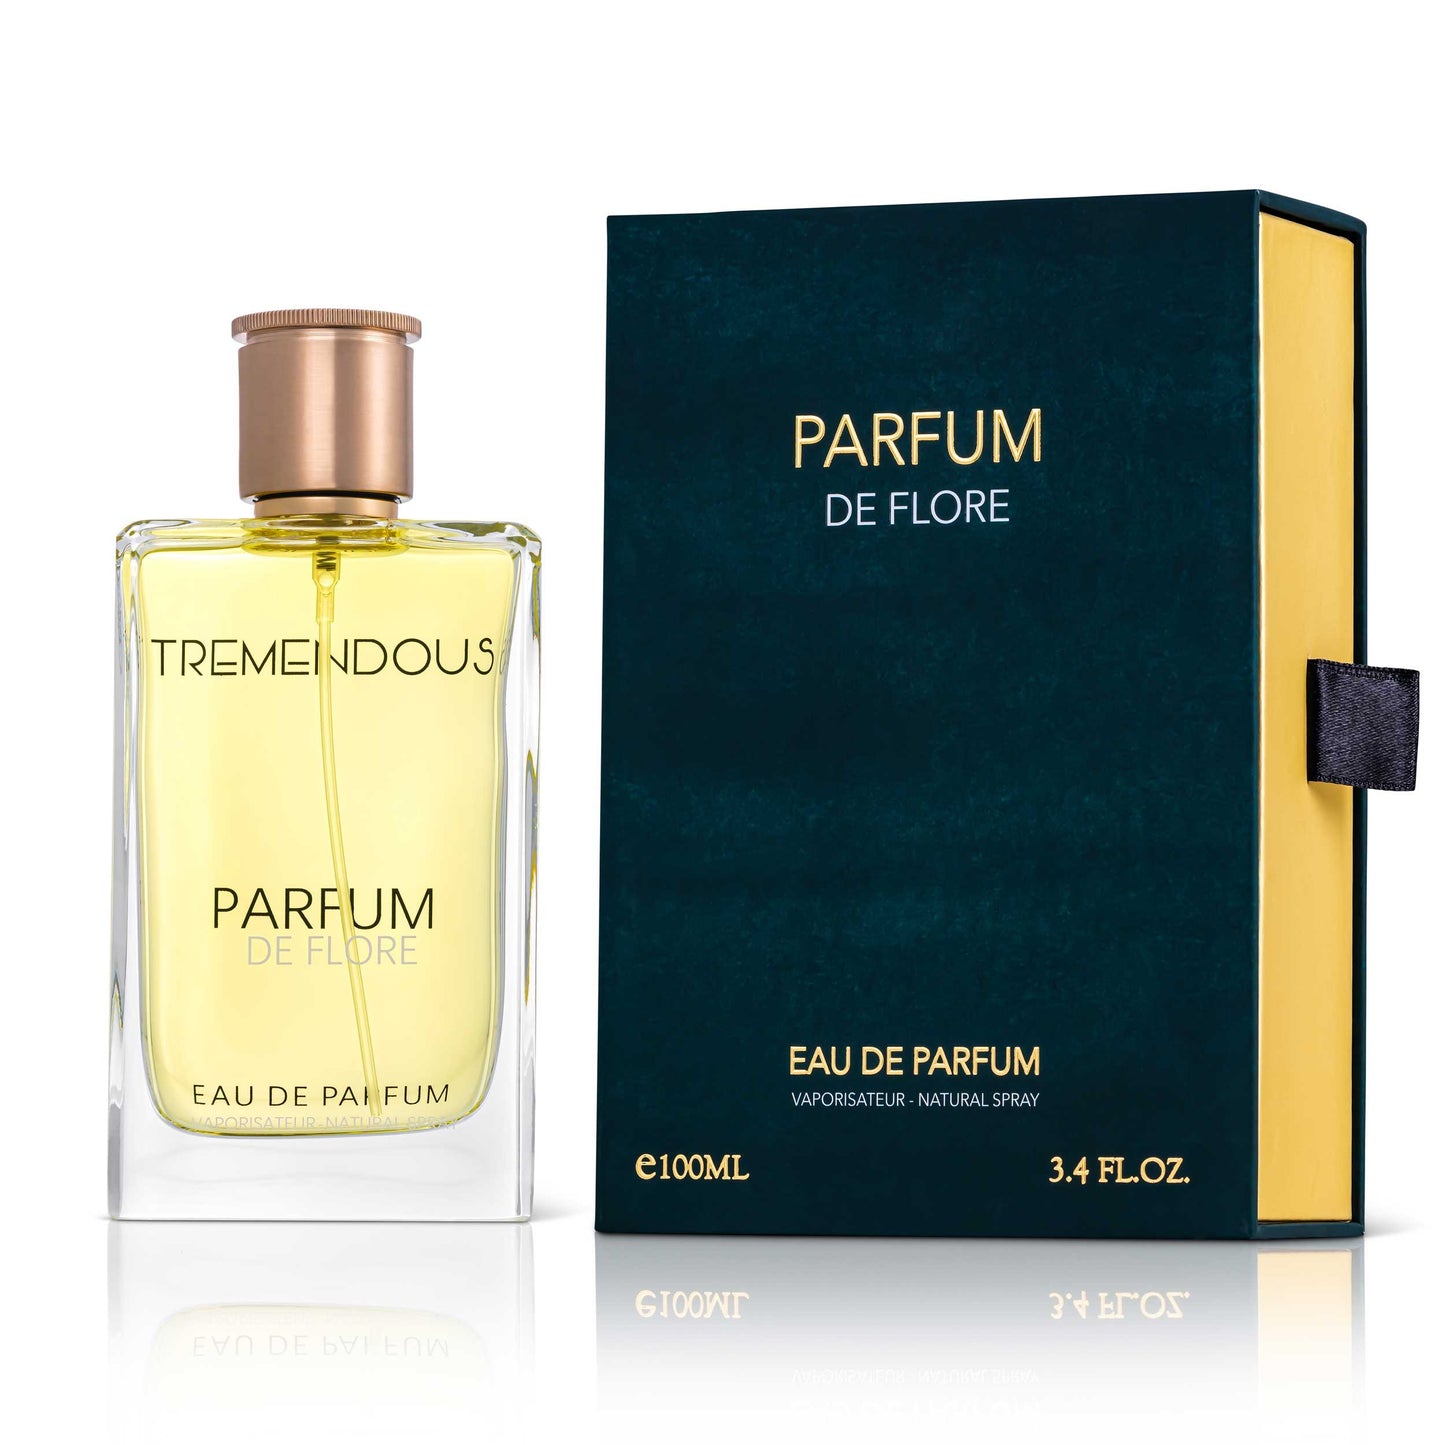 Parfum De Flore by Tremendous Parfums